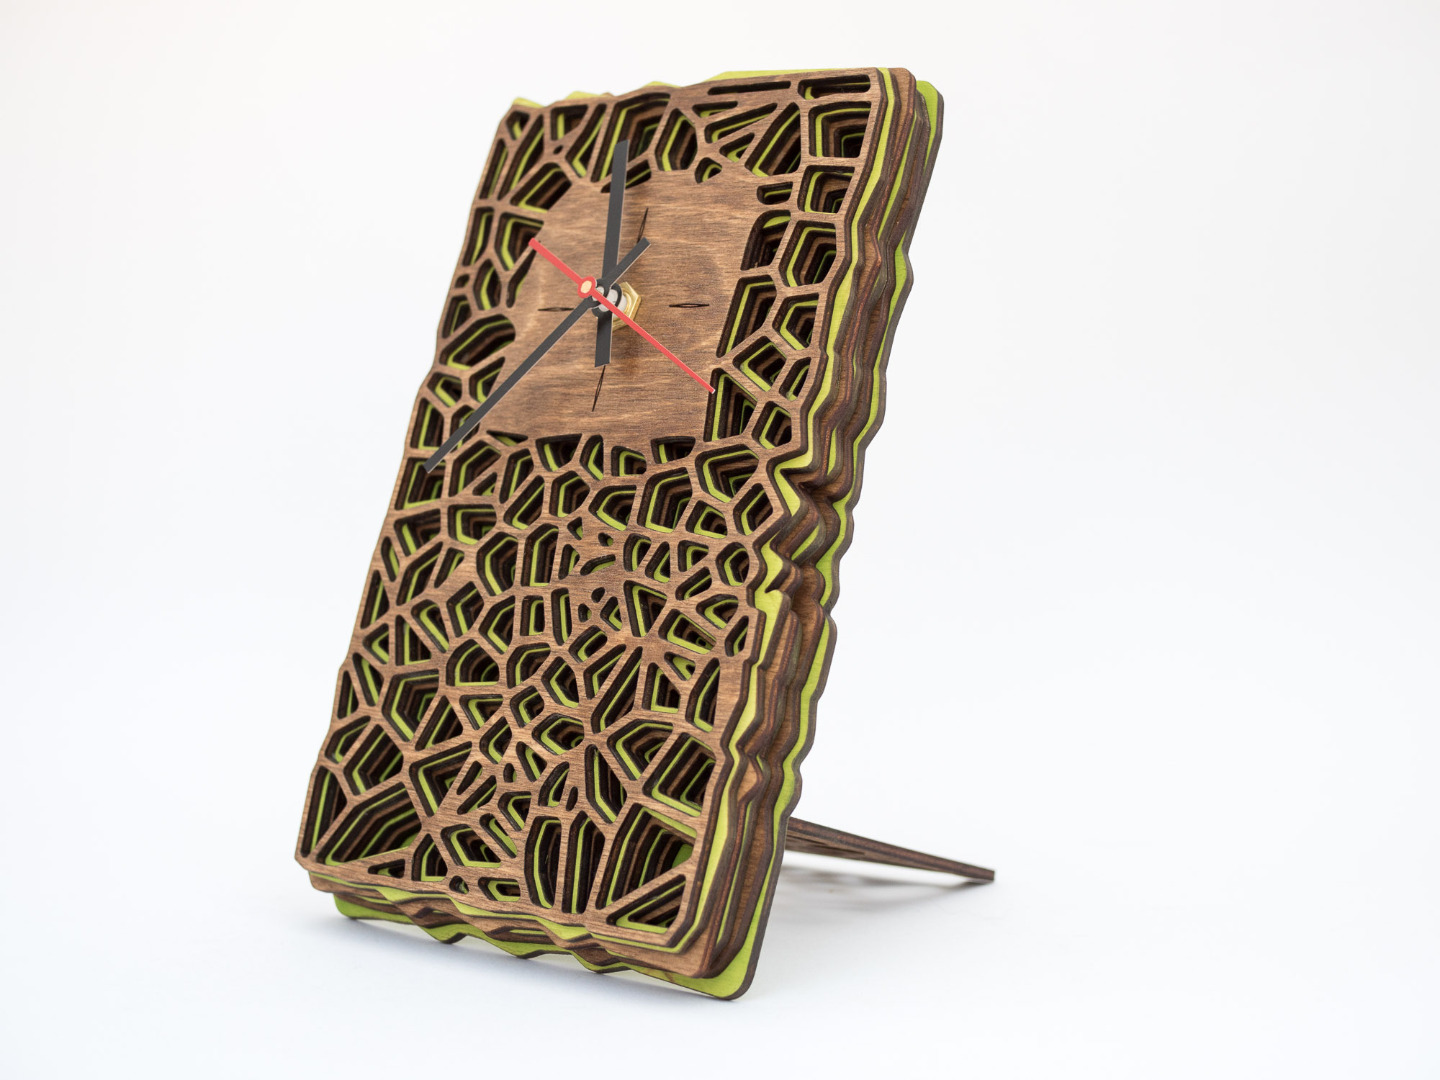 Uhr aus Holz für Schreibtisch oder Wand - Organisches Zweifarbiges Design in Walnuss und Maigrün